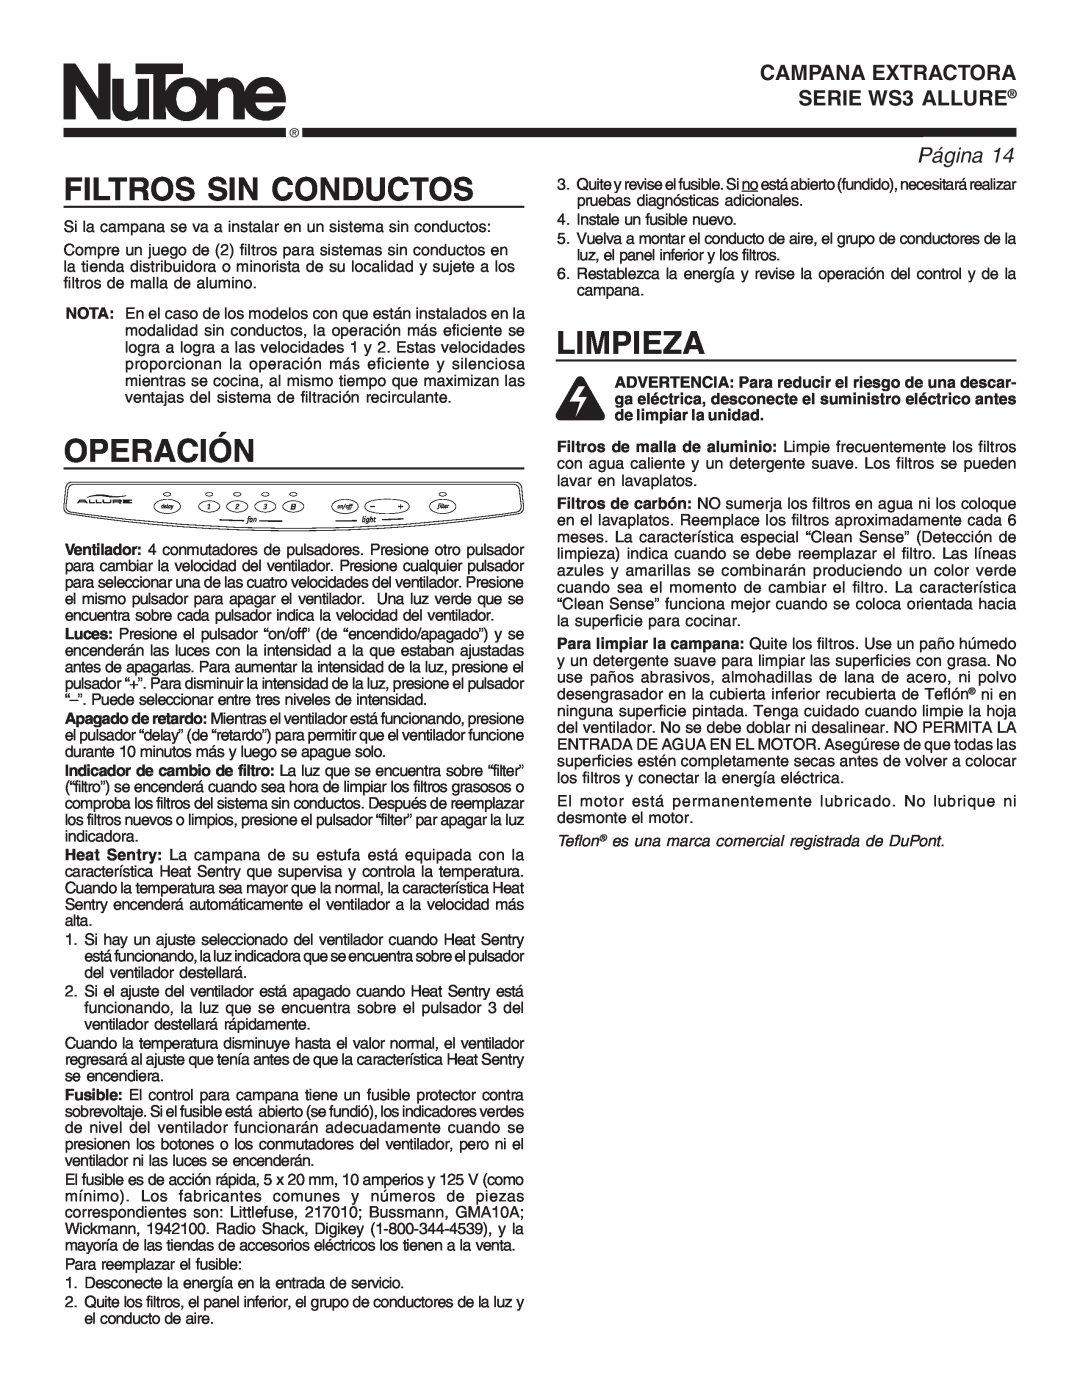 NuTone WS3 Filtros Sin Conductos, Operación, Limpieza, Teflon es una marca comercial registrada de DuPont, PáginaPage 